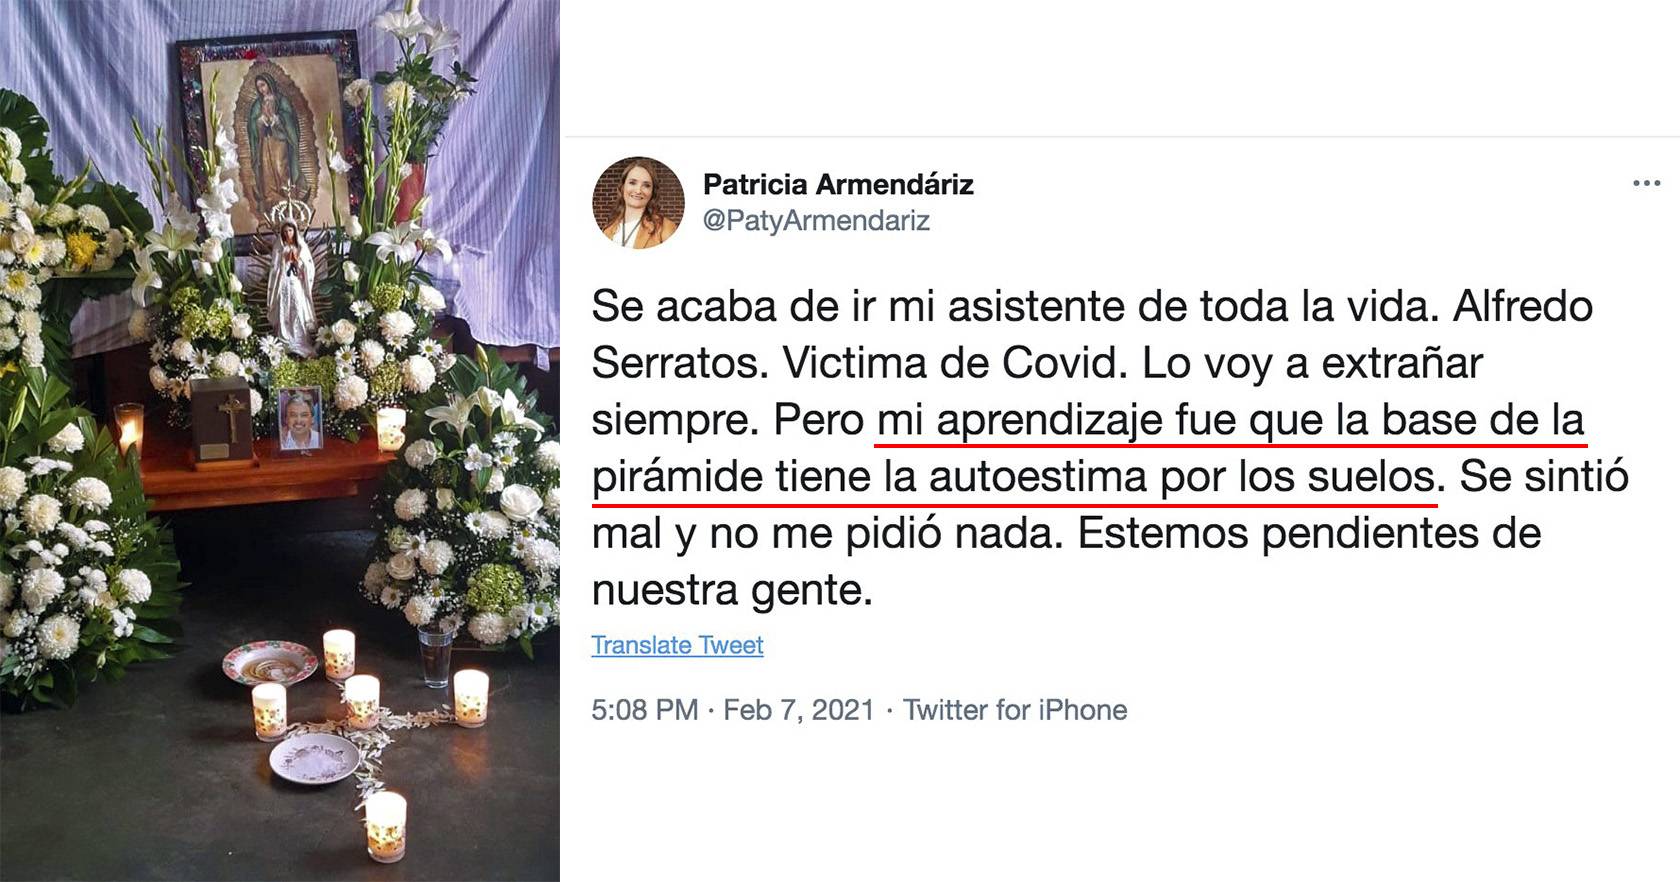 Indigna Patricia Armendáriz al criticar autoestima de su asistente fallecido por covid-19